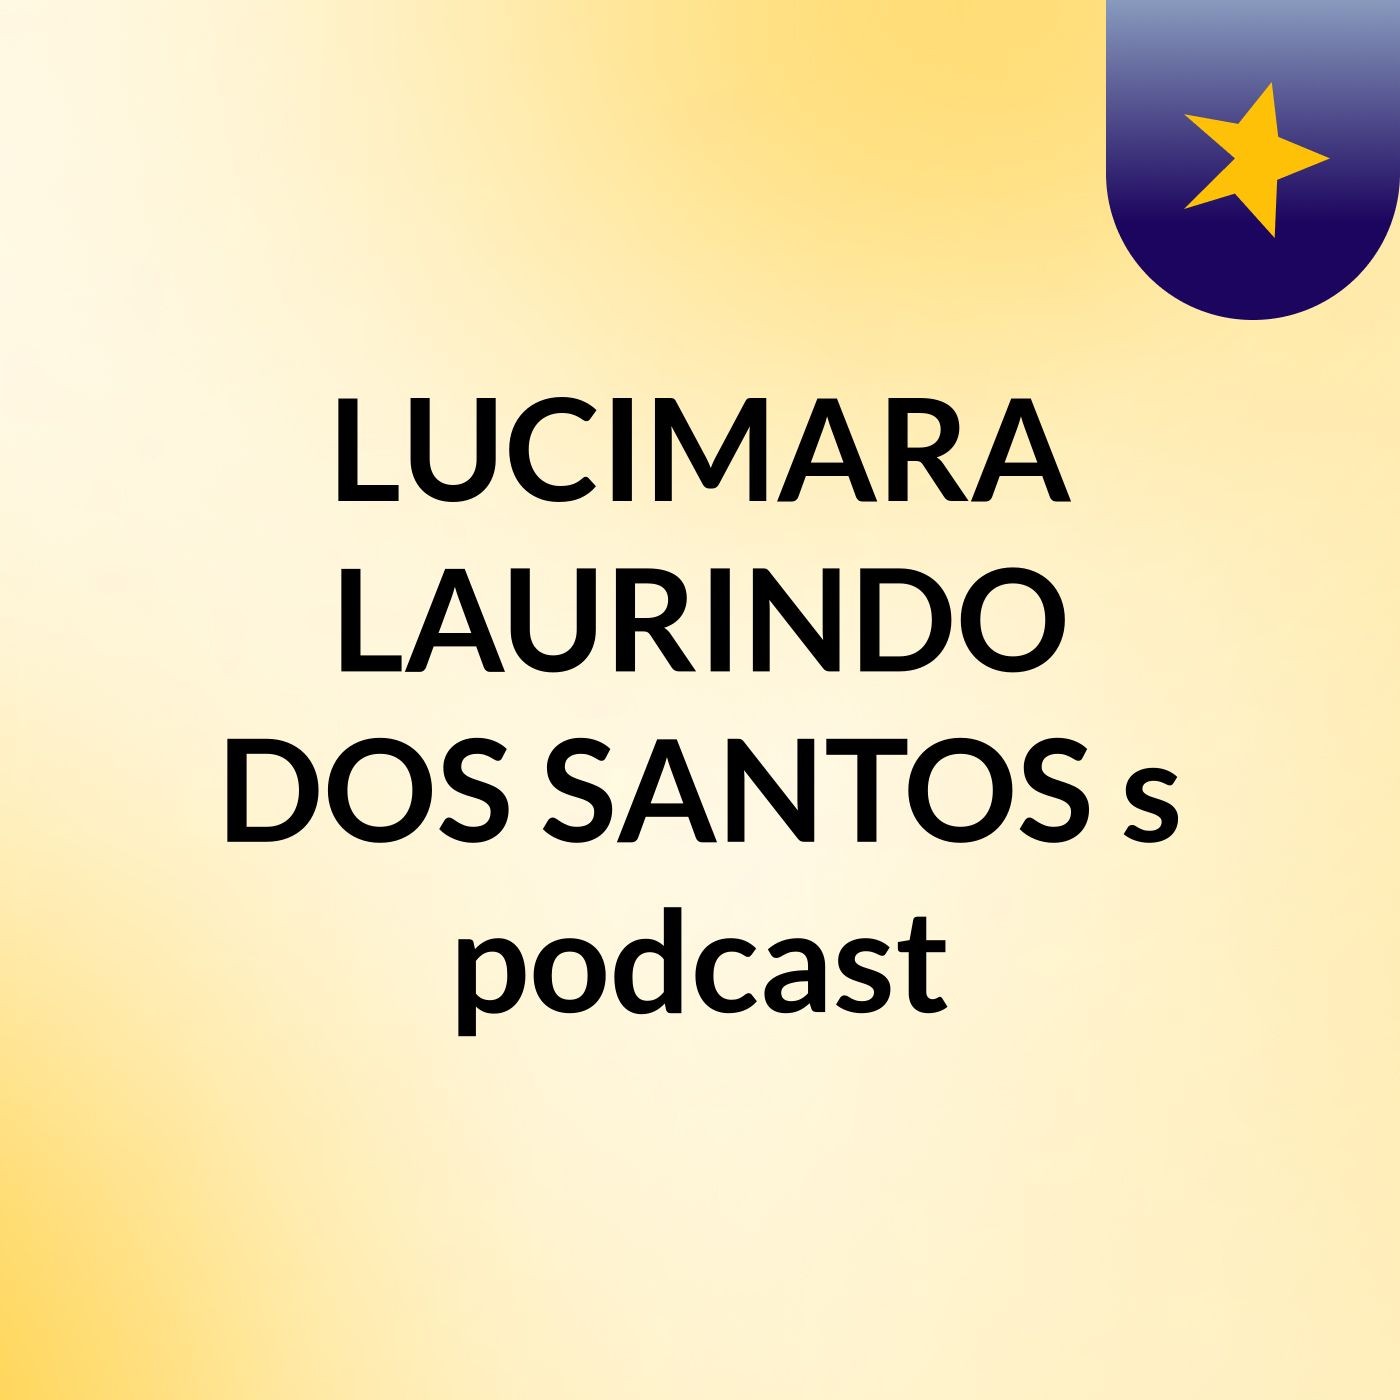 LUCIMARA LAURINDO DOS SANTOS's podcast